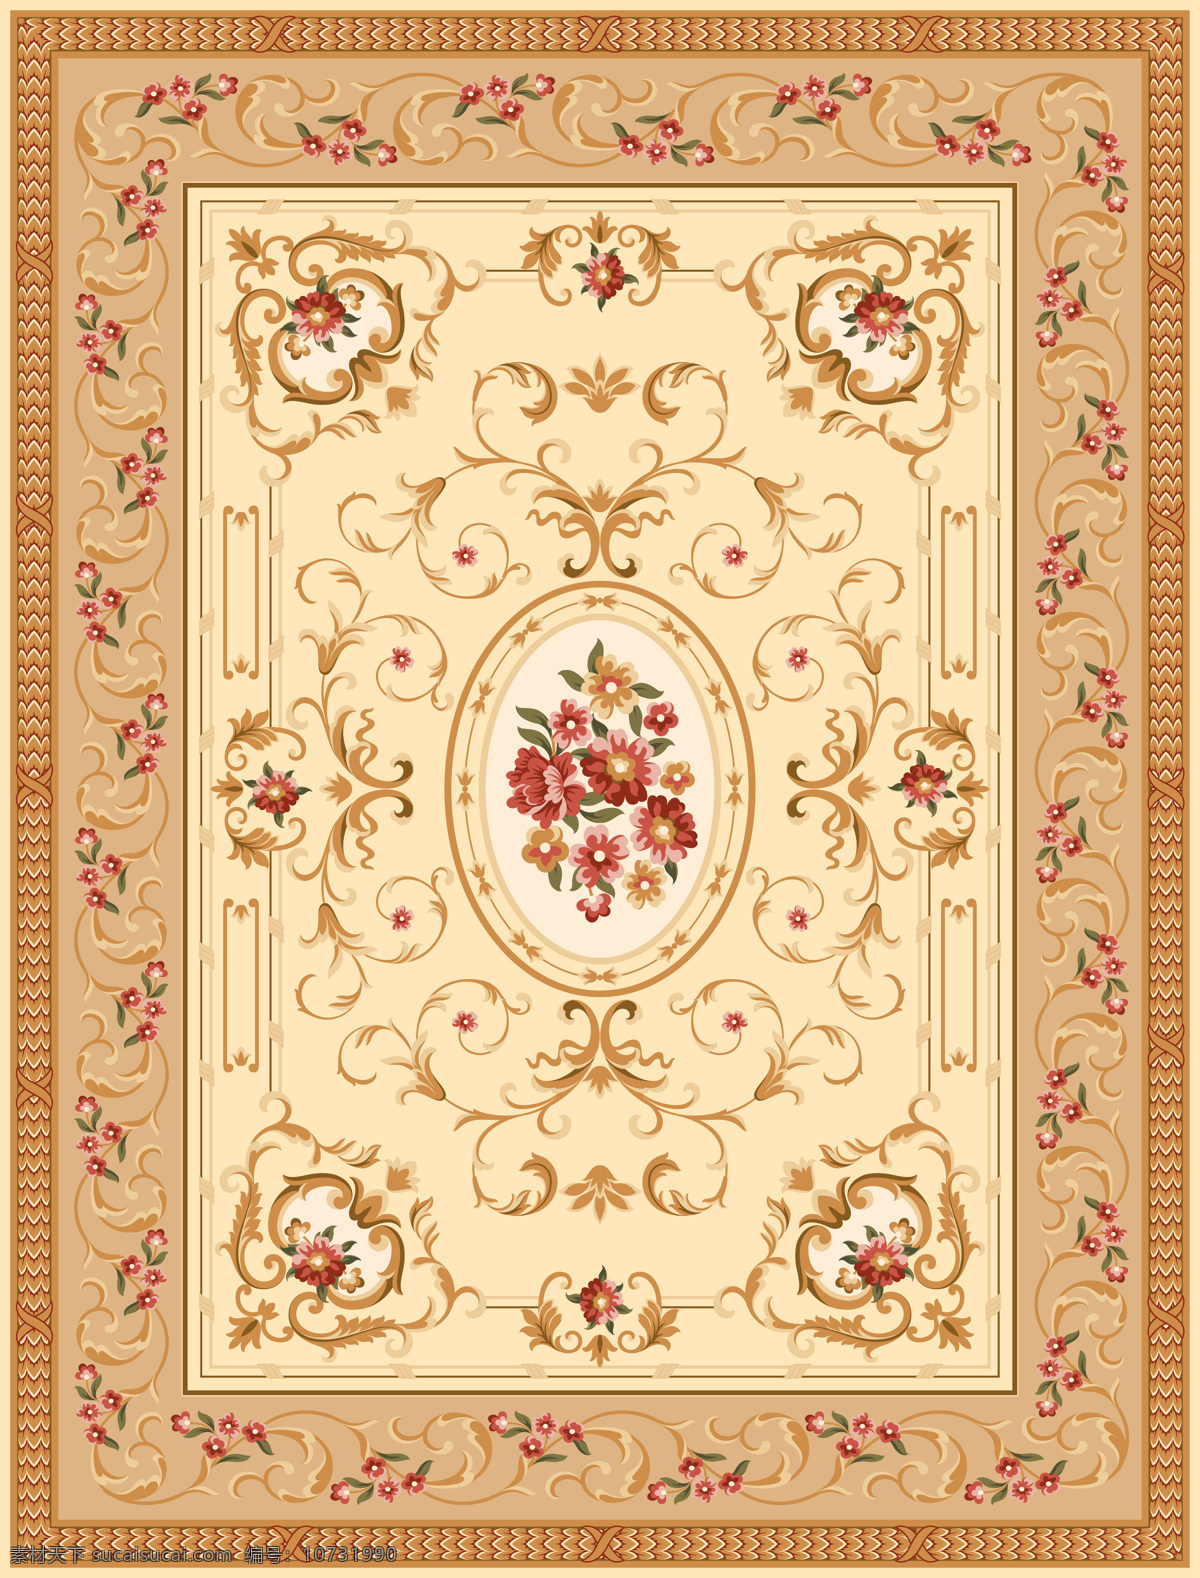 地毯设计 地毯图案 地毯拼花 传统图案 外国传统图案 欧式图案 边花 底纹 图案 花边花纹 底纹边框